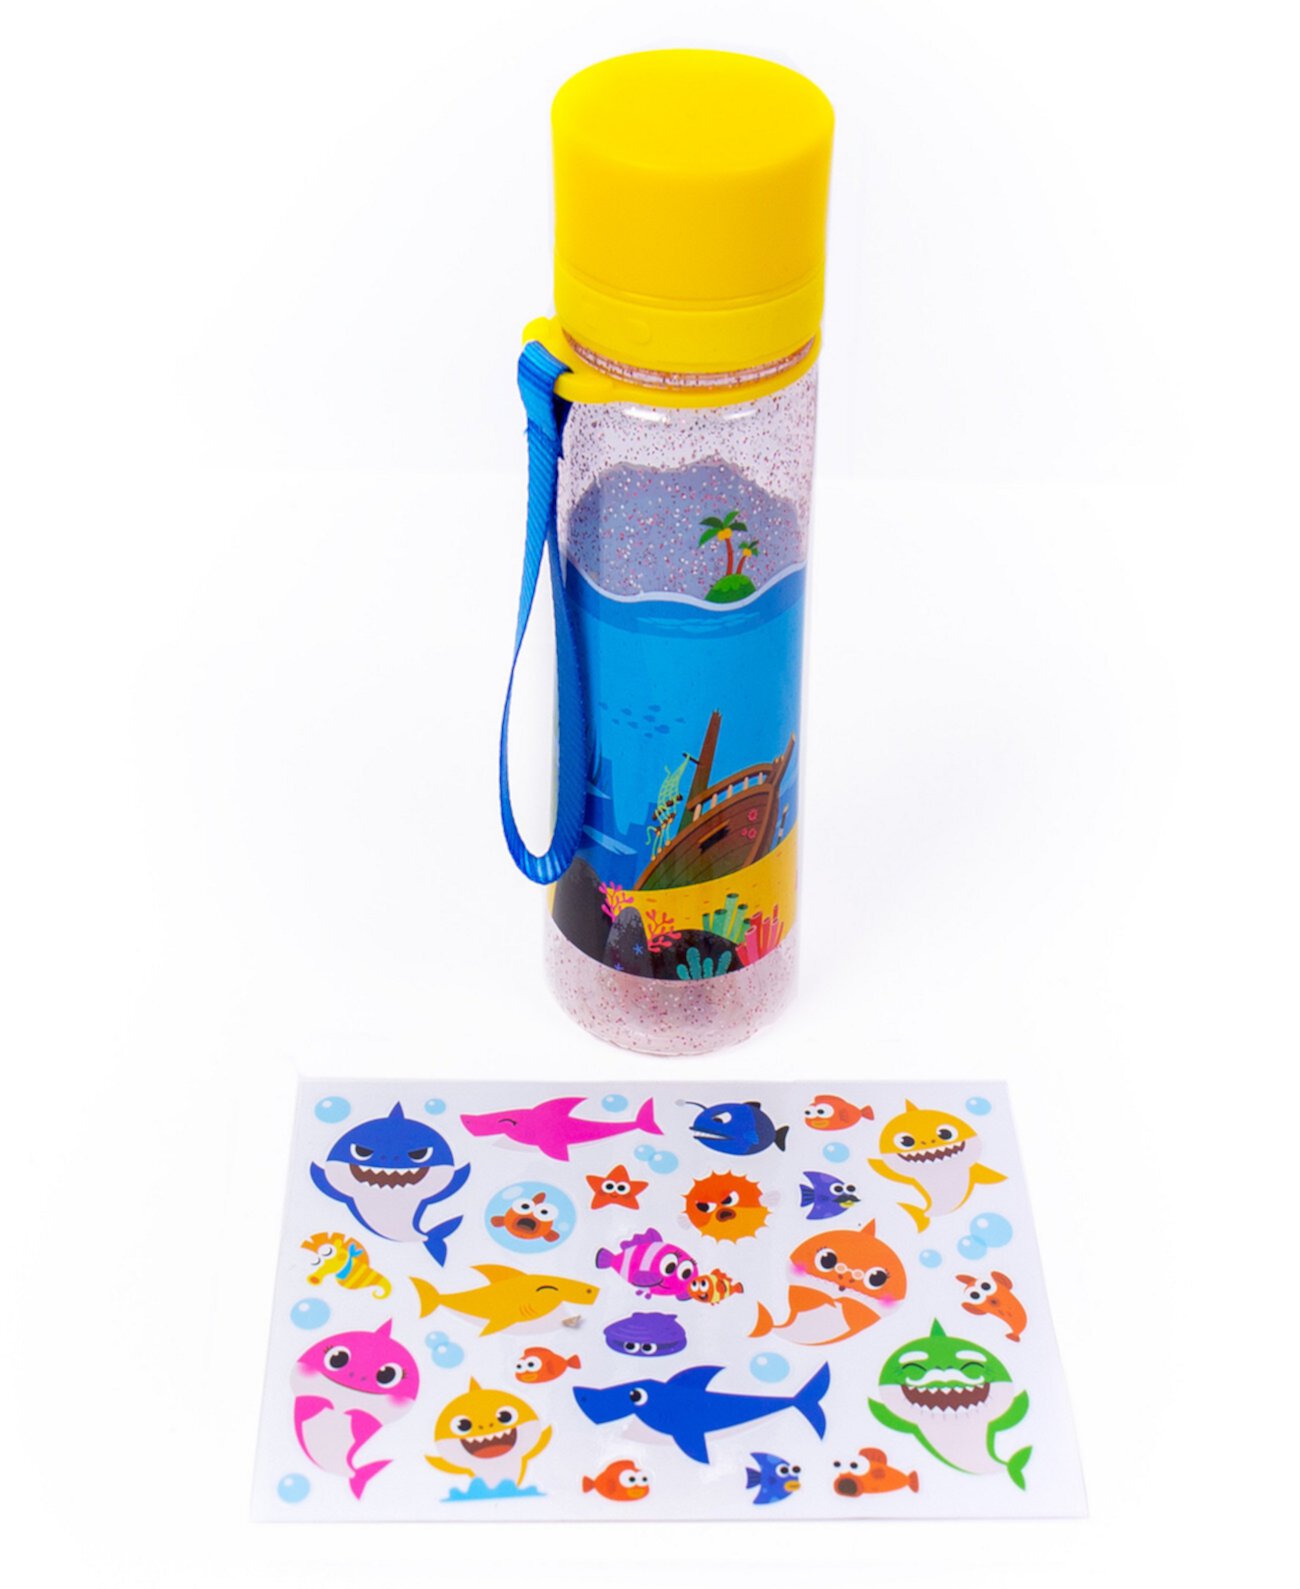 Украсьте свой собственный игровой набор из бутылки с водой Baby Shark